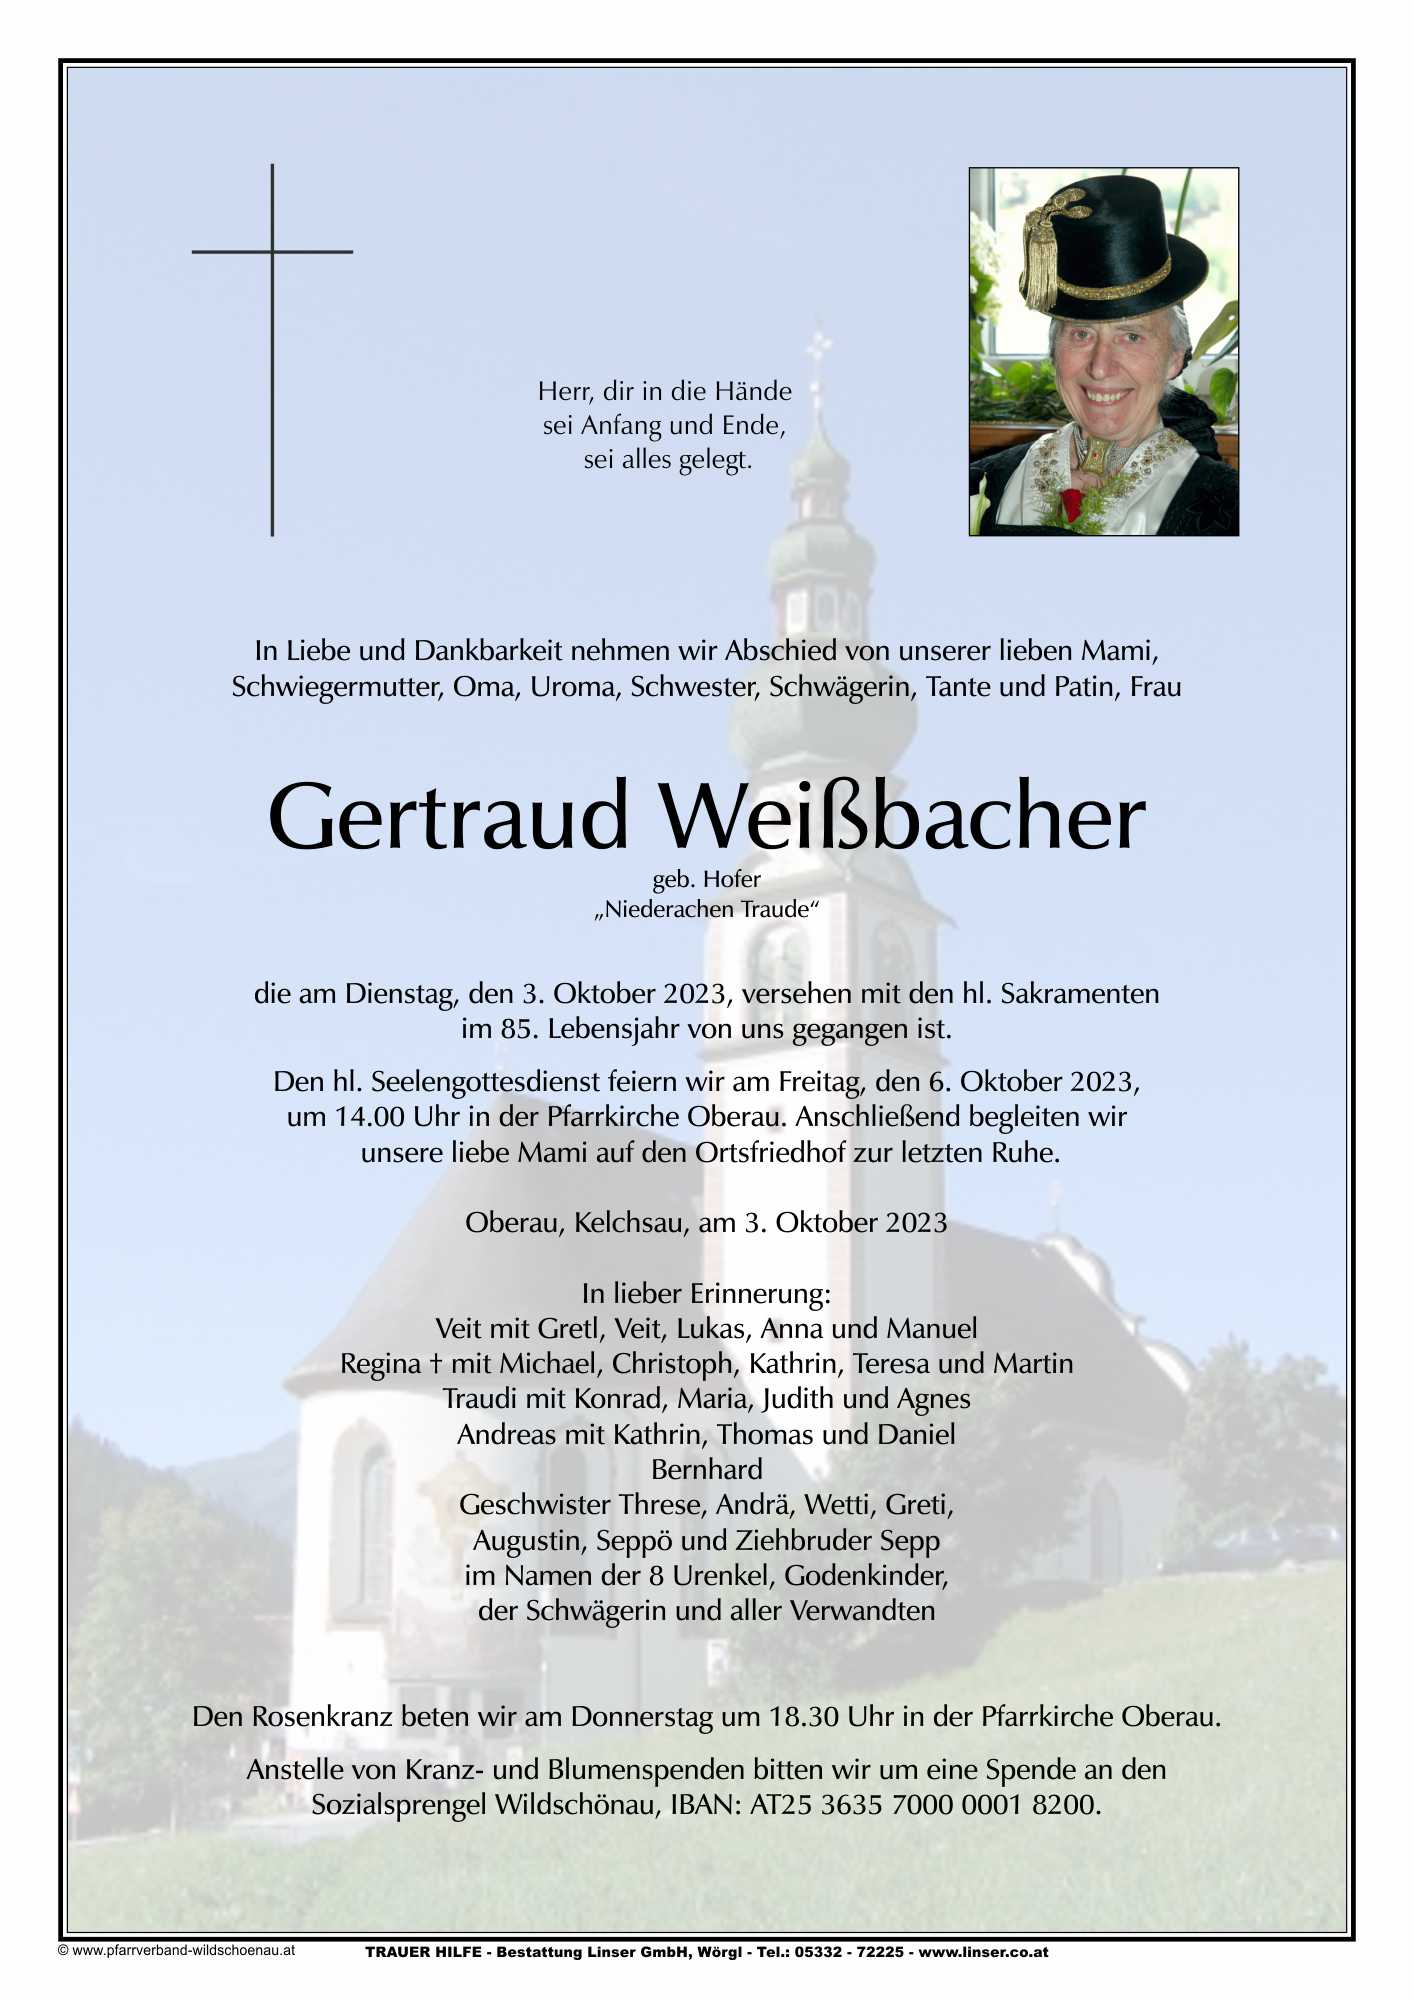 Gertraud Weißbacher